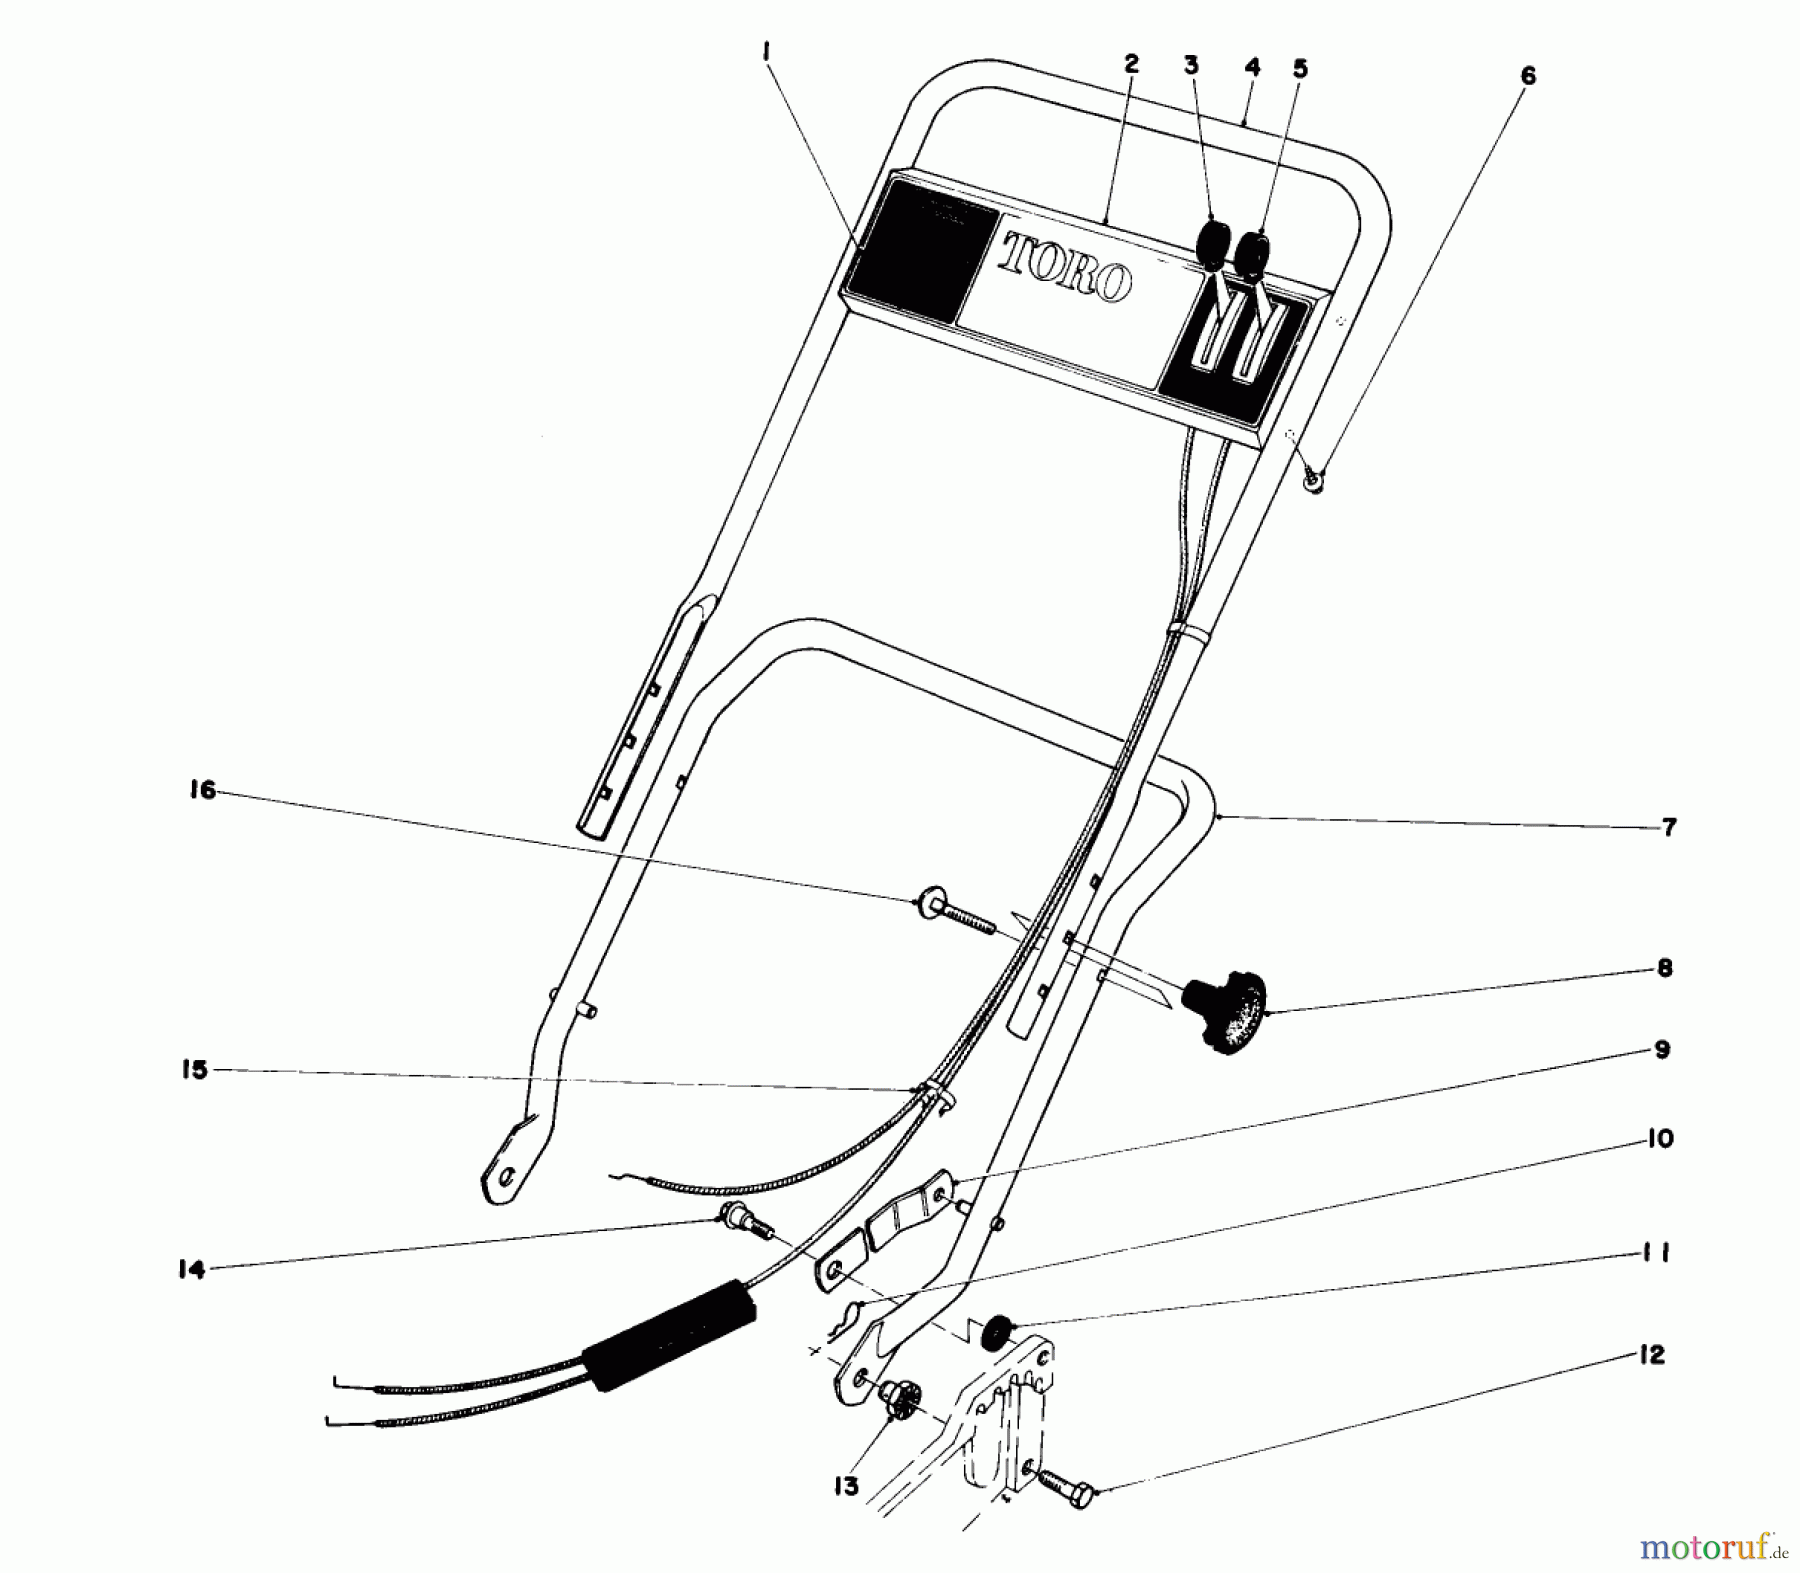  Toro Neu Mowers, Walk-Behind Seite 1 20750 - Toro Lawnmower, 1978 (8000001-8999999) HANDLE ASSEMBLY